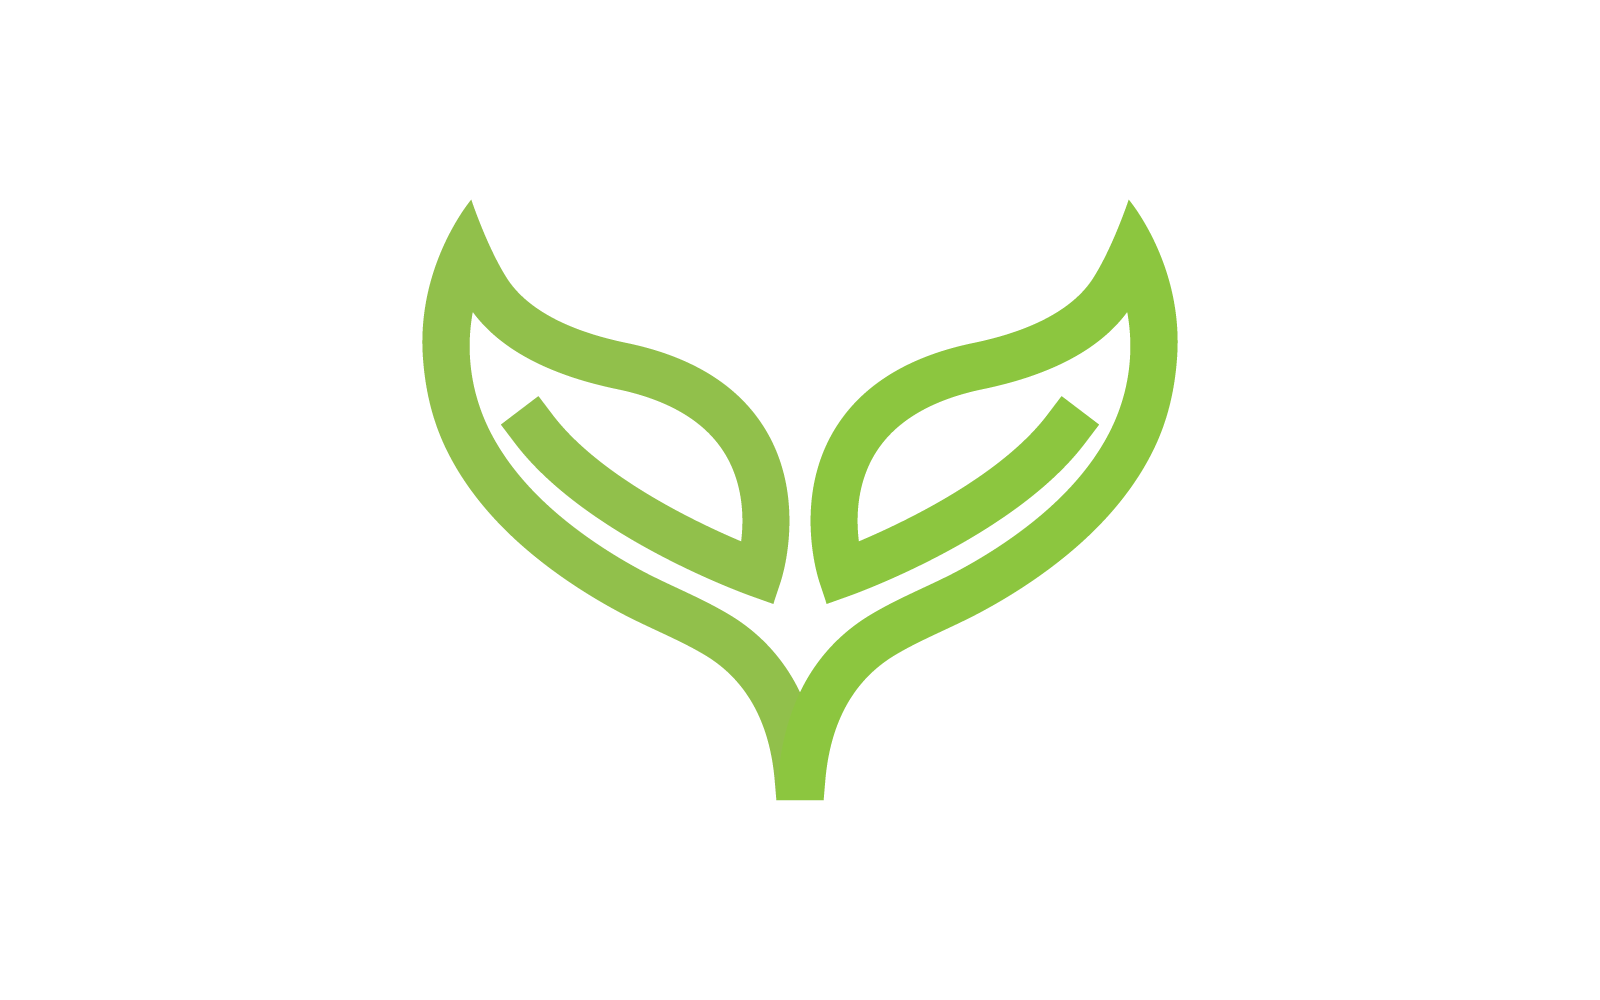 Green leaf illustration nature template logo design Logo Template